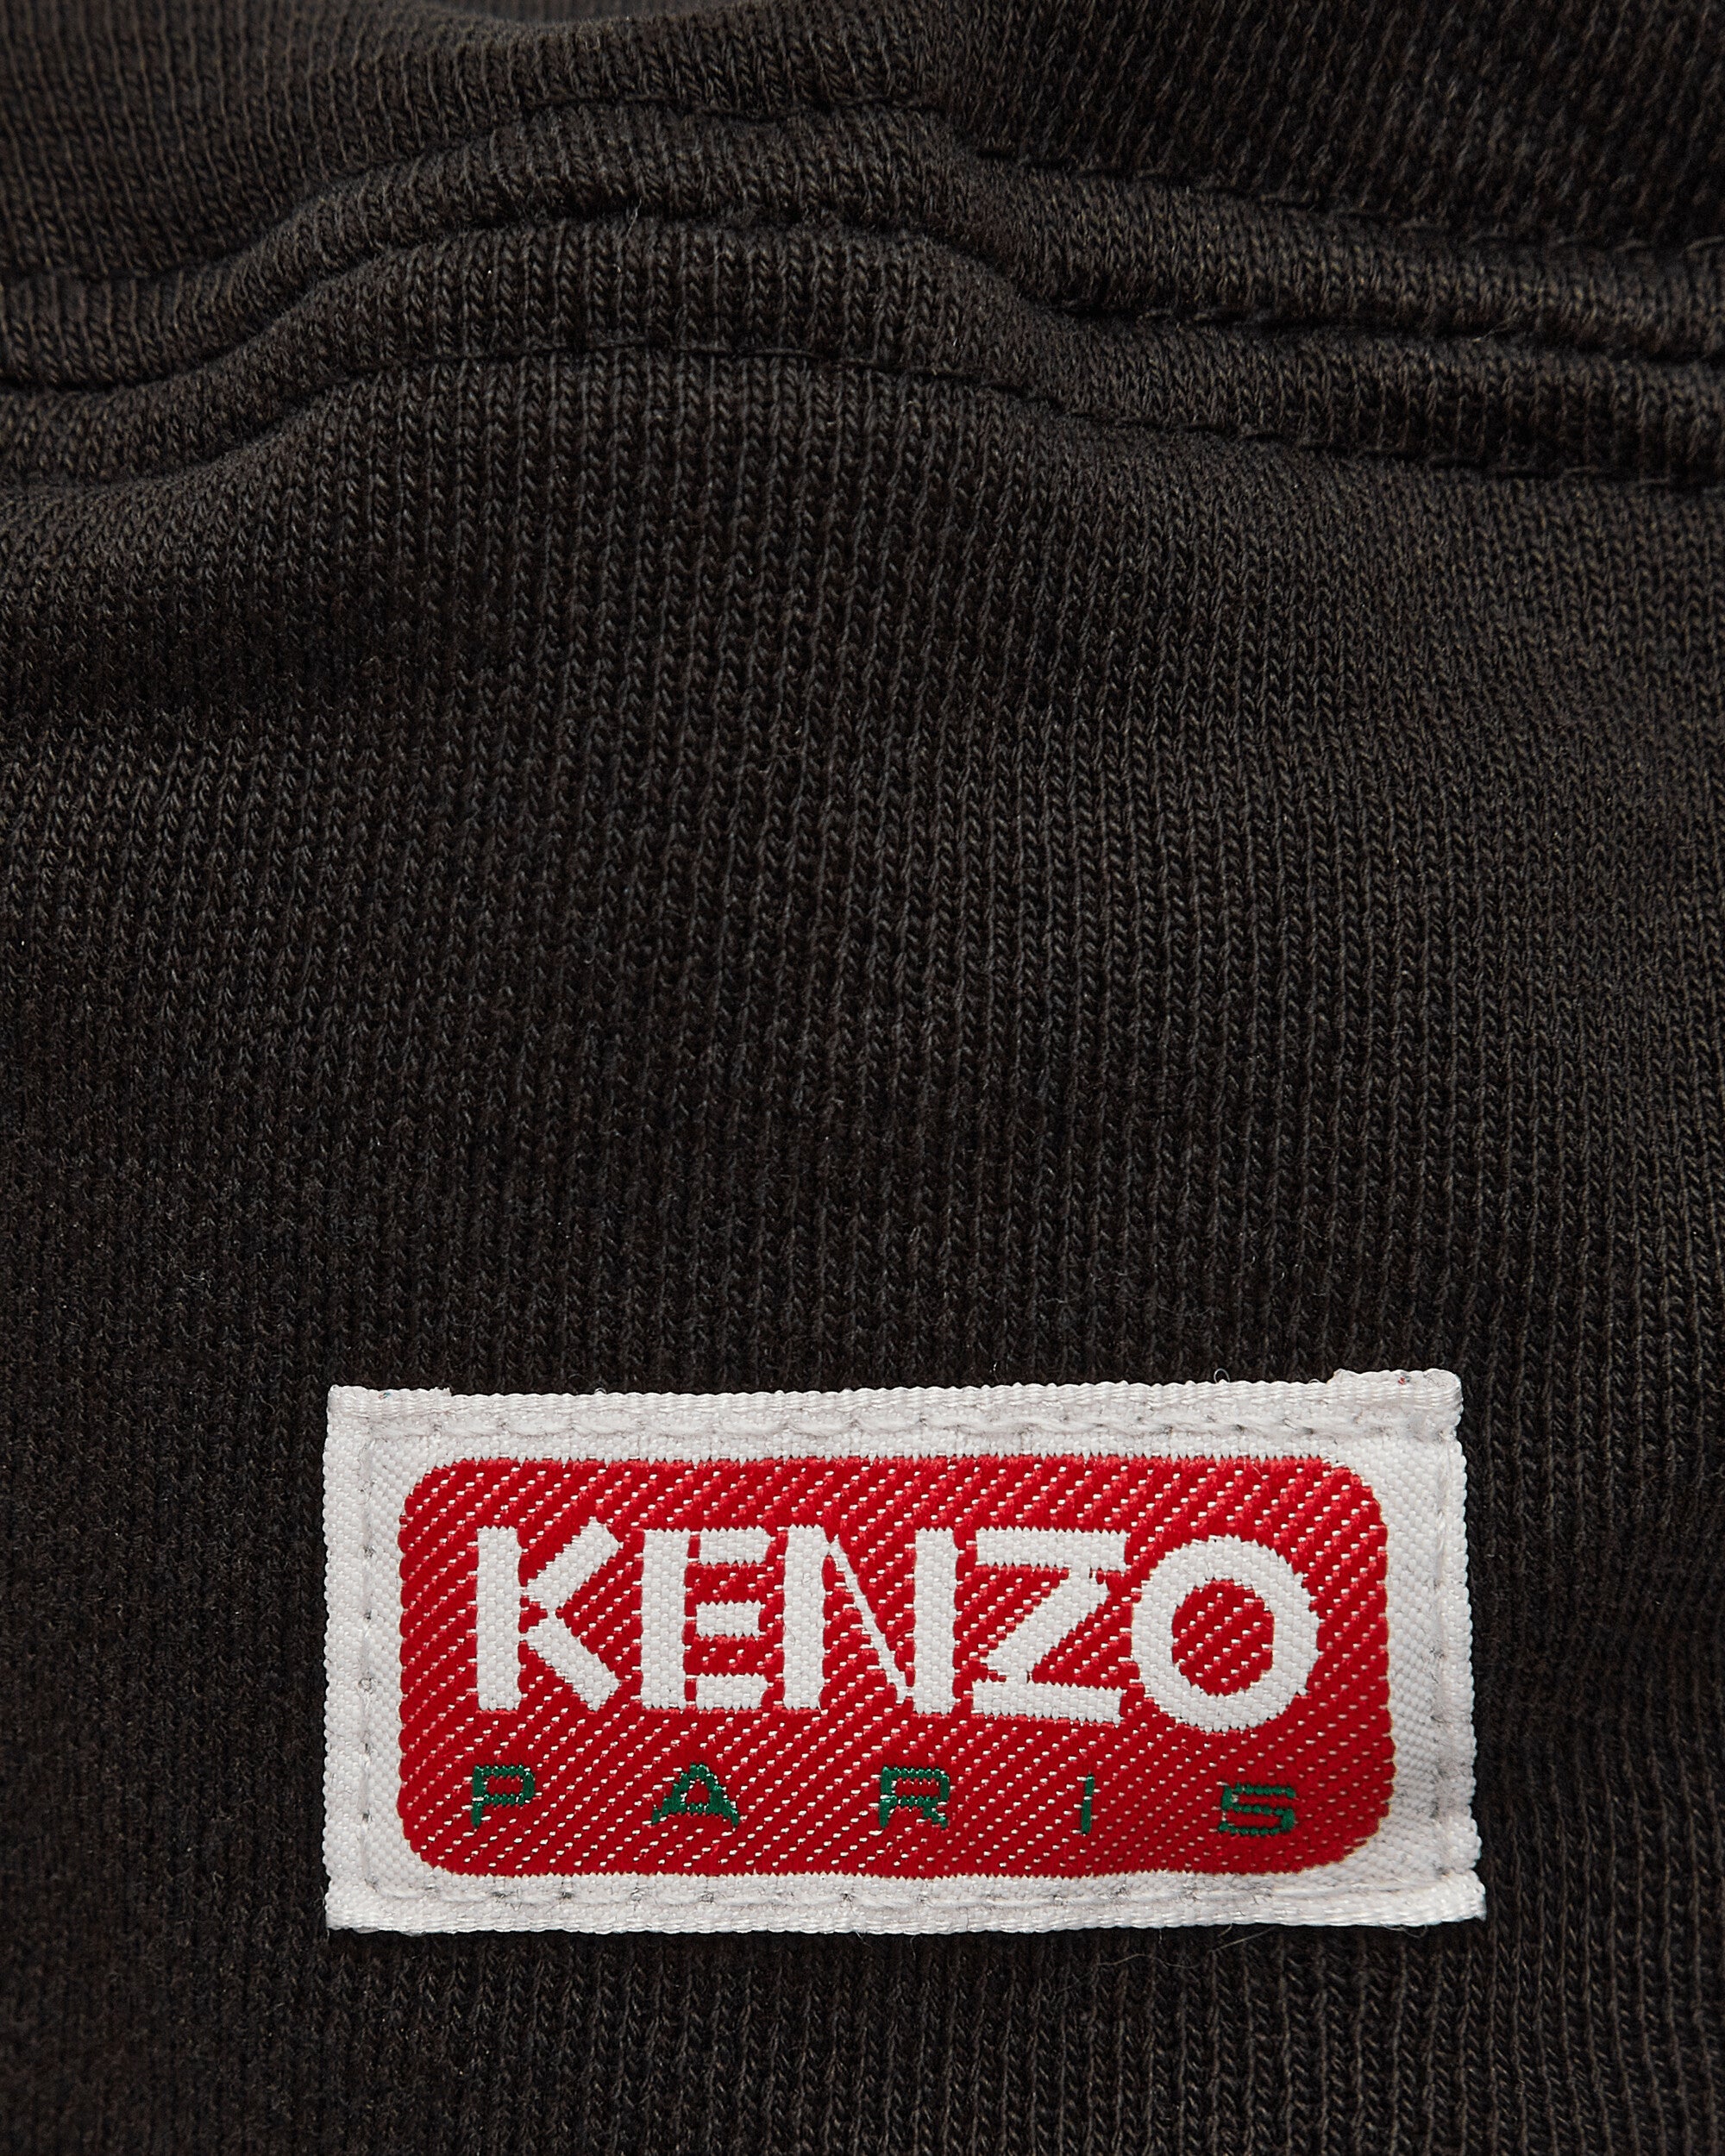 Kenzo Paris Beret Black Hats Caps FD55AC872F40 99